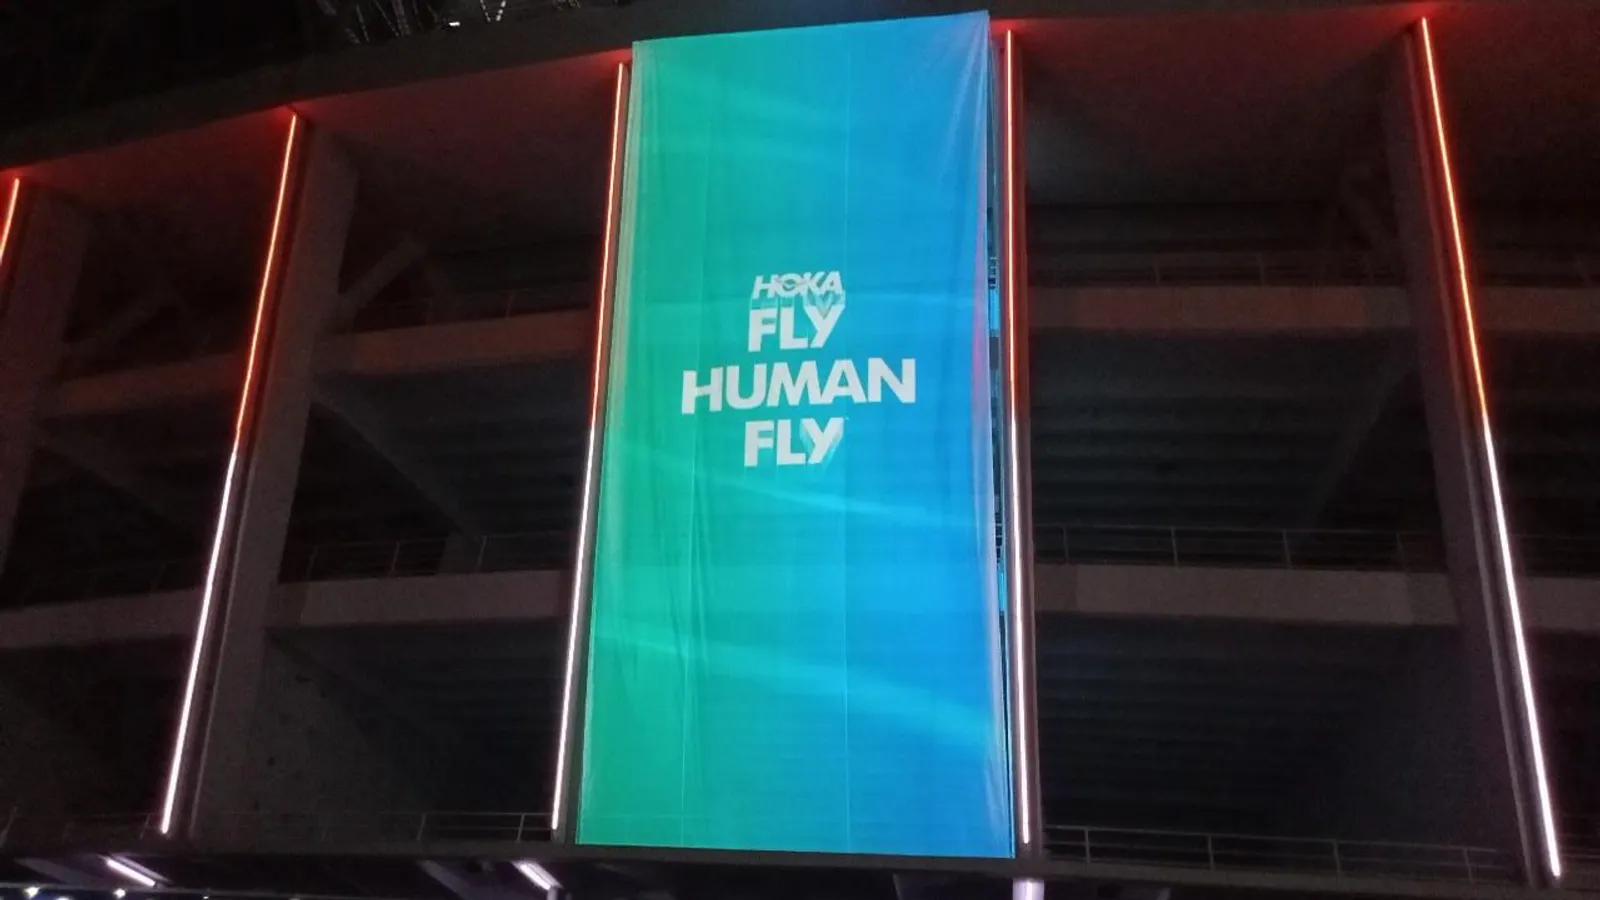 HOKA Rayakan Kampanye "Fly Human Fly" – Suguhkan Layar Raksasa di GBK 